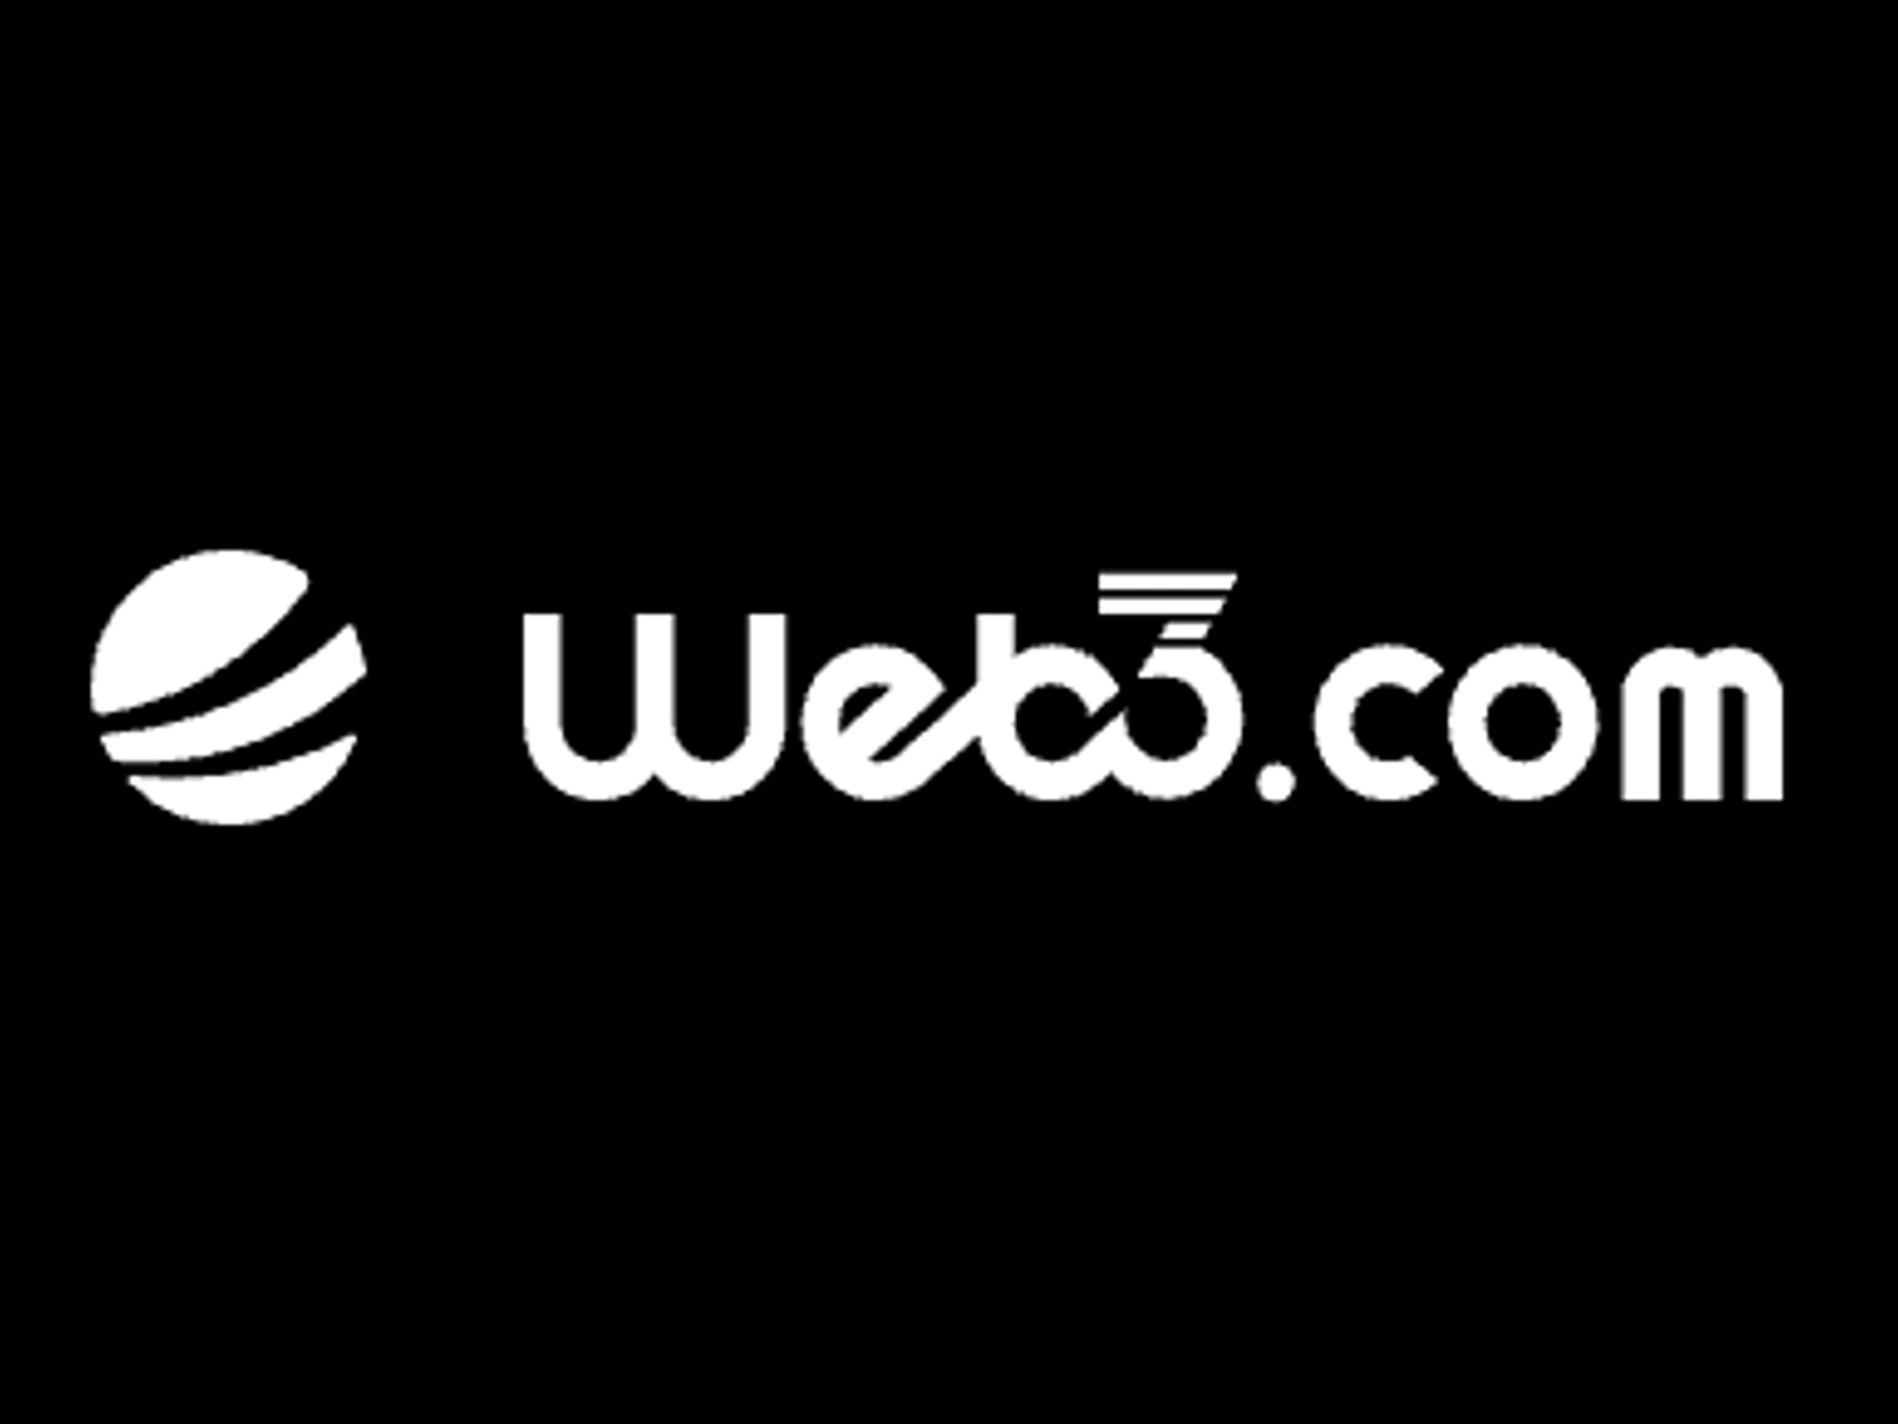 Web3.com